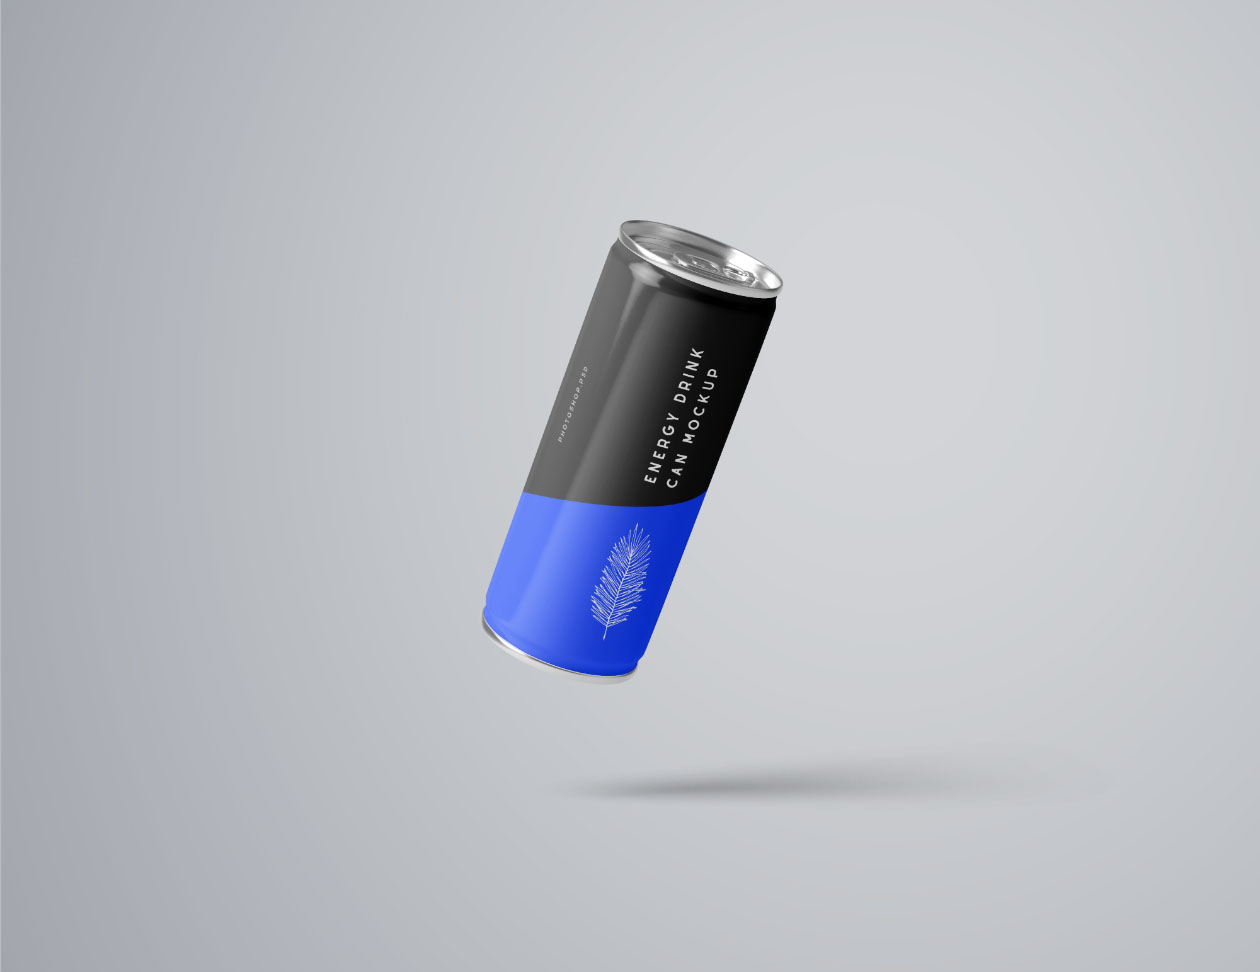 能量饮料易拉罐外观设计样机PSD模板 Energy Drink Can Mockup – PSD插图(4)